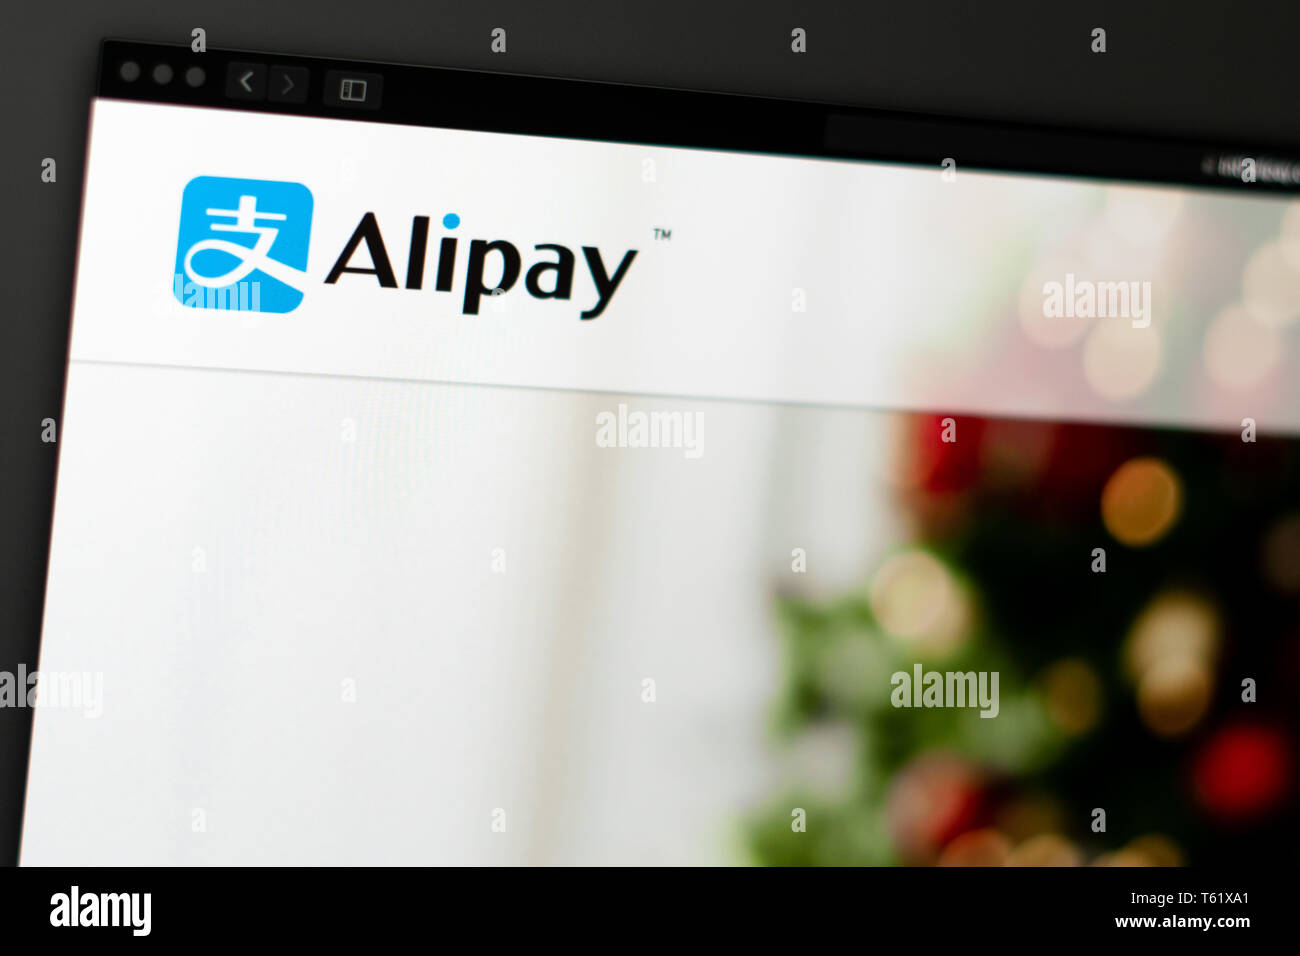 Société Alipay accueil du site. Close up of Alipay logo. Peut être utilisé comme illustration pour les médias ou d'autres sites web, bon pour info ou marketing Banque D'Images